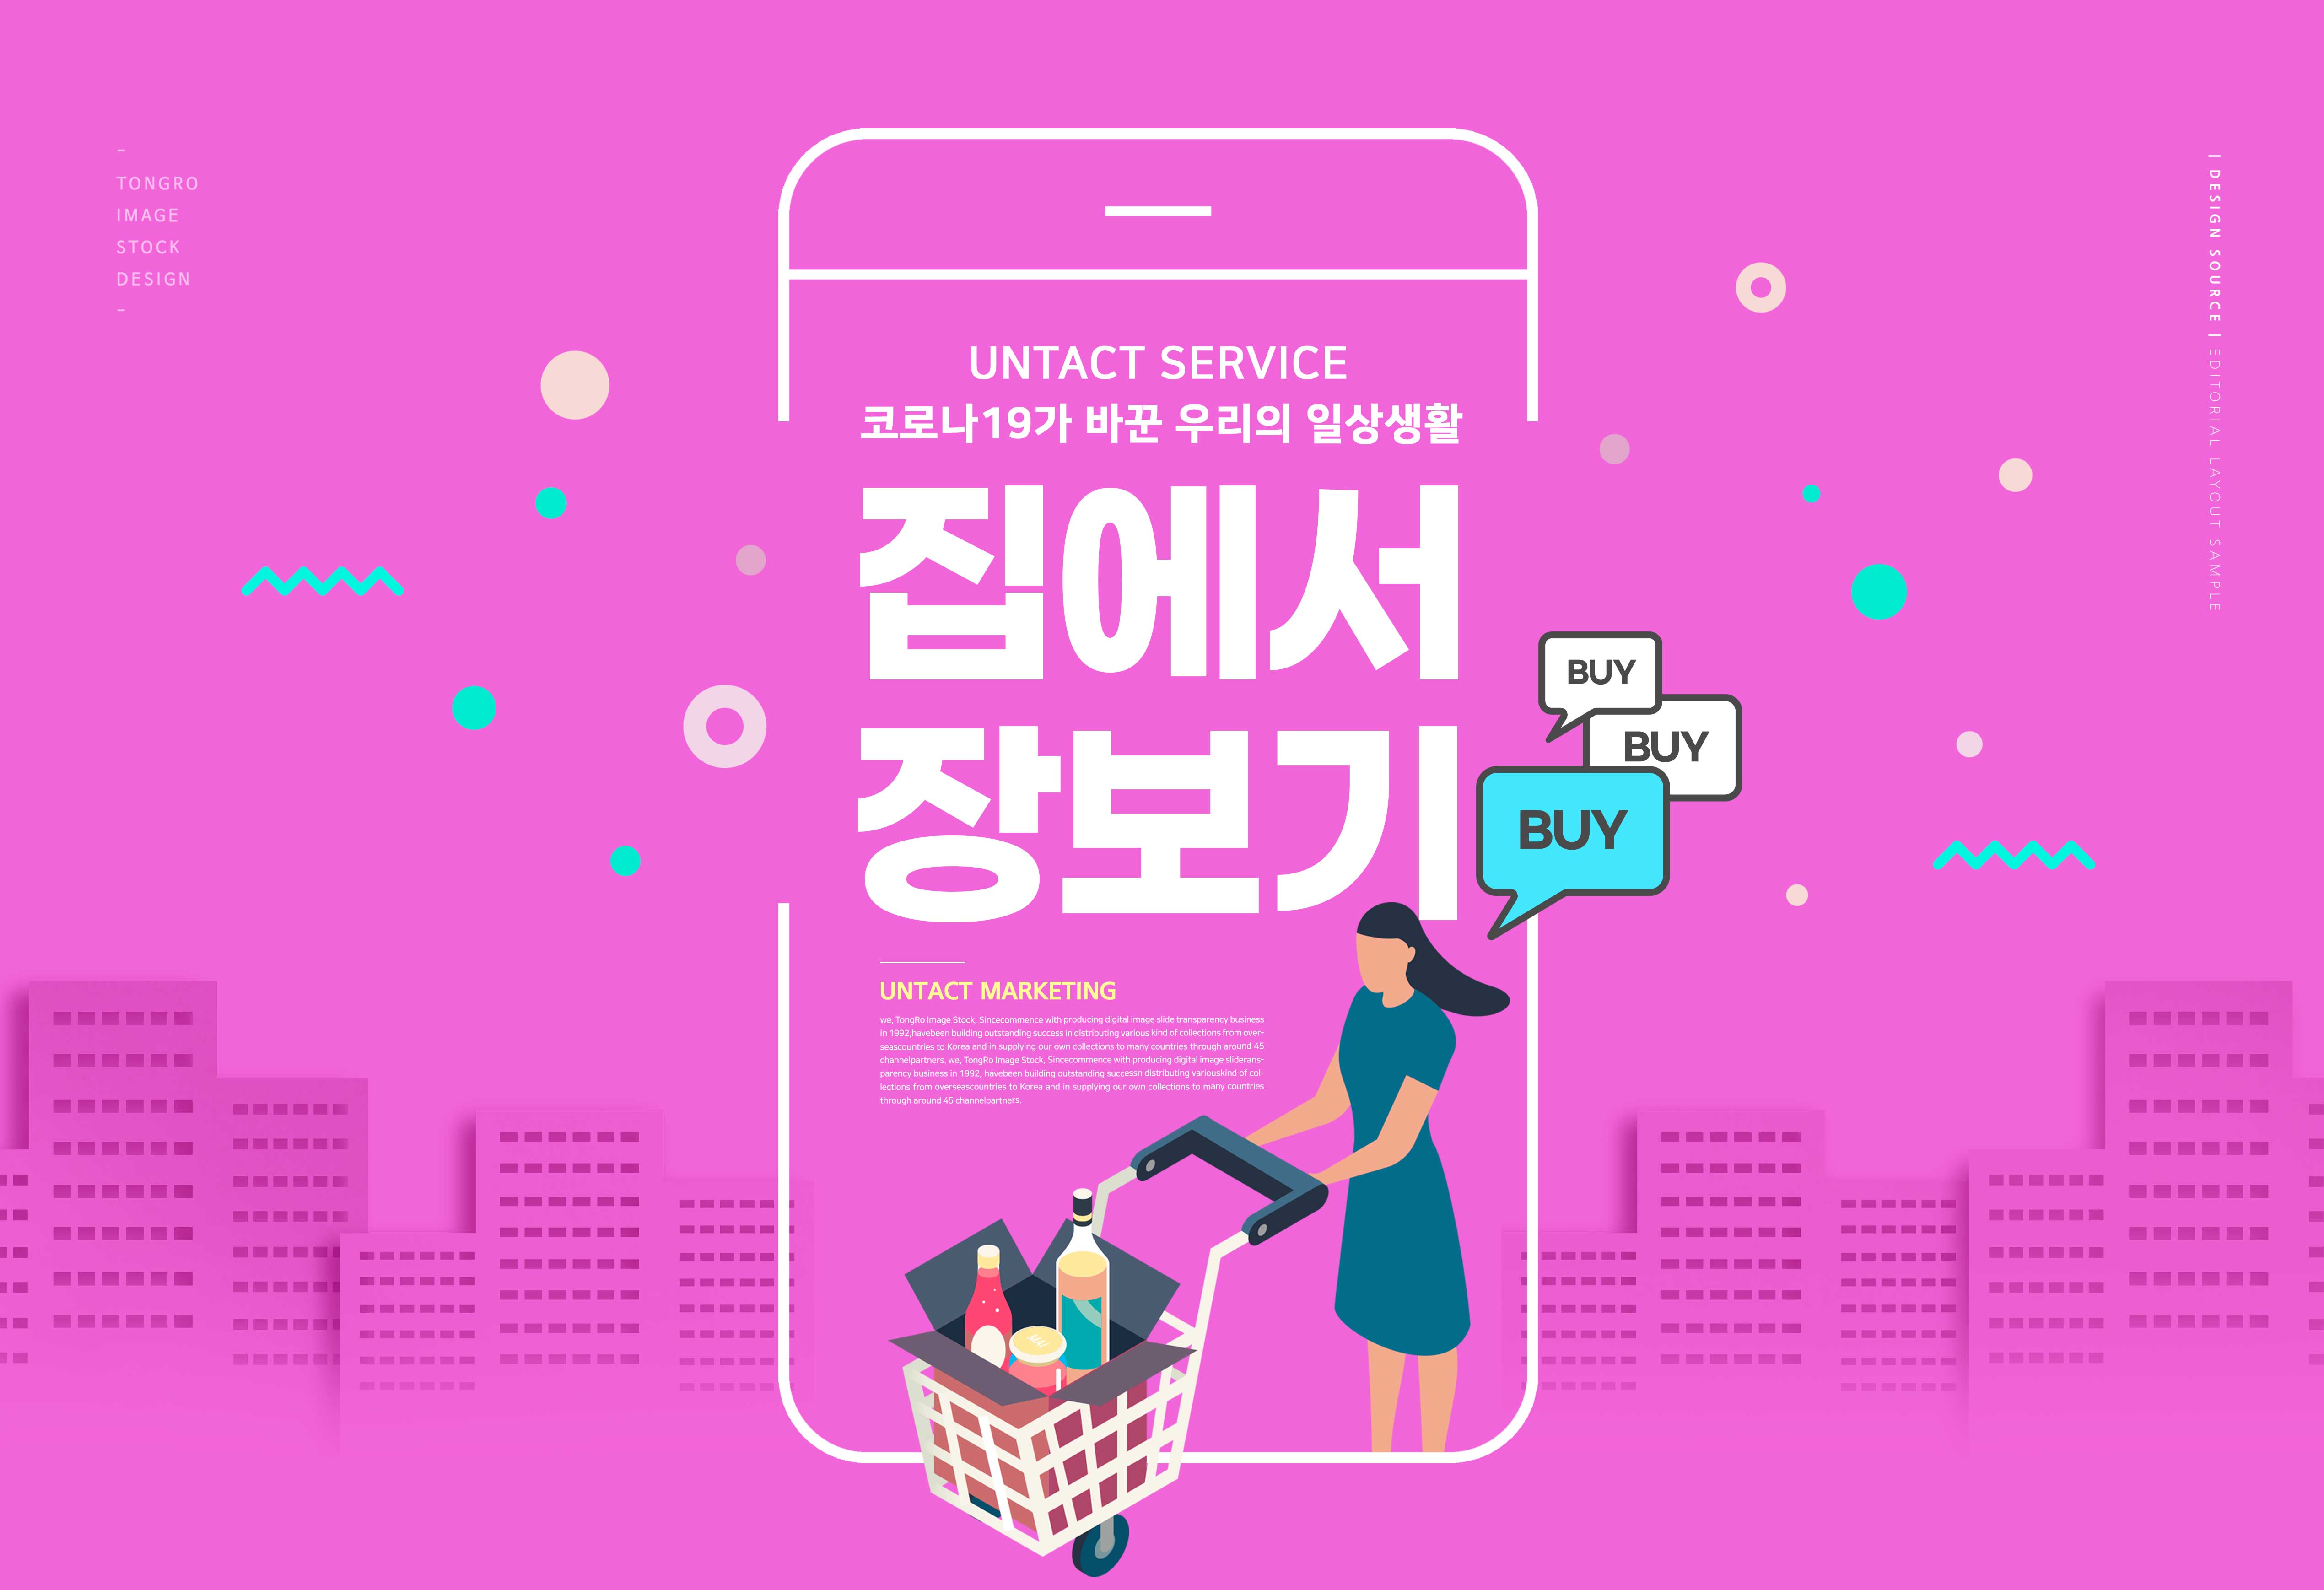 网上购物无接触营销广告图形psd韩国素材设计素材模板